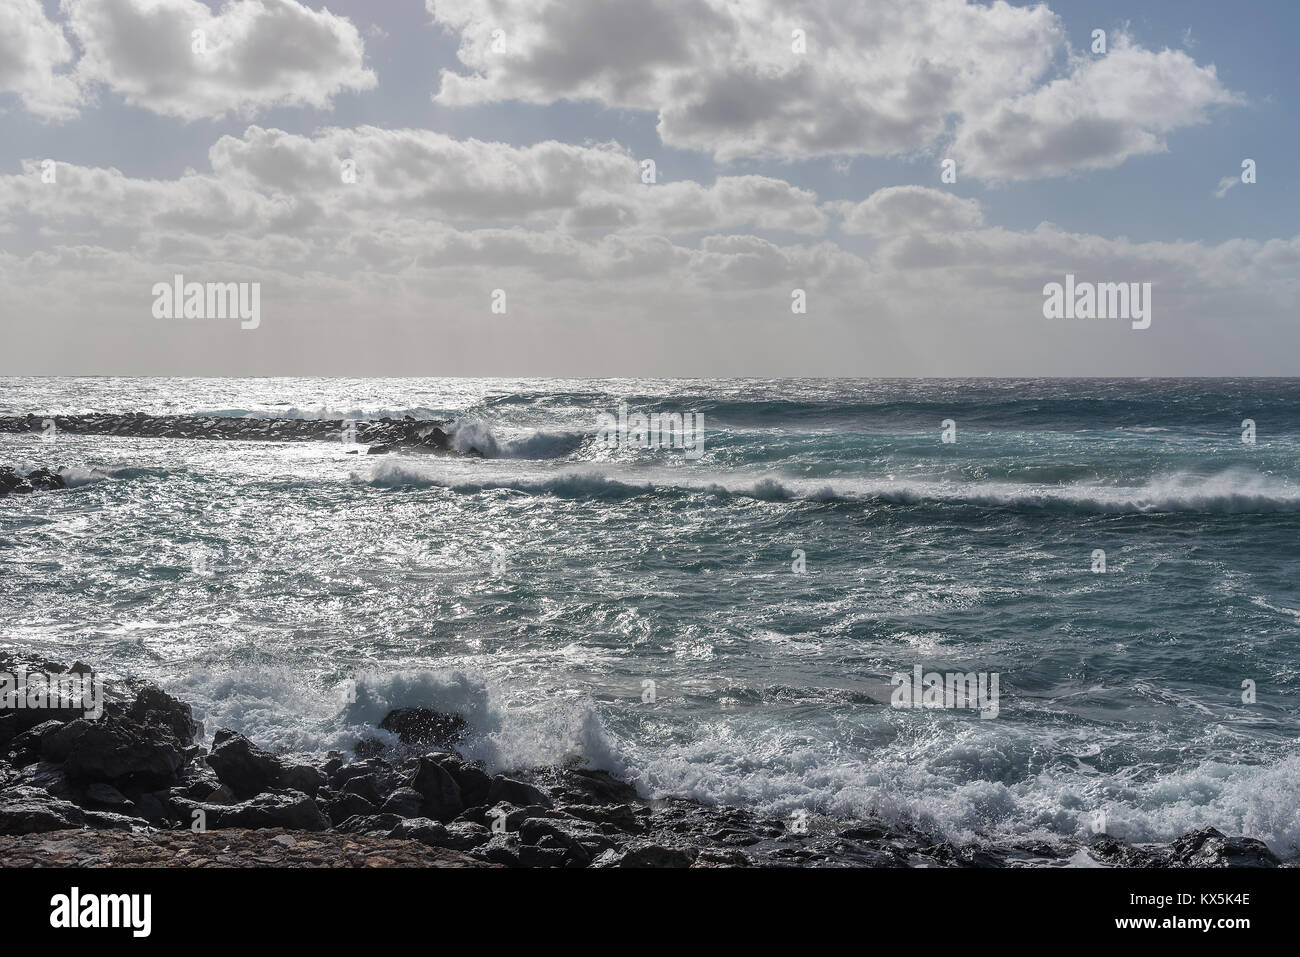 Ein sehr stürmischer Tag in Costa Teguise auf Lanzarote lässt Wellen am Strand brechen. Der Himmel ist wolkenverhangen und der Regen wird prasseln. Stock Photo